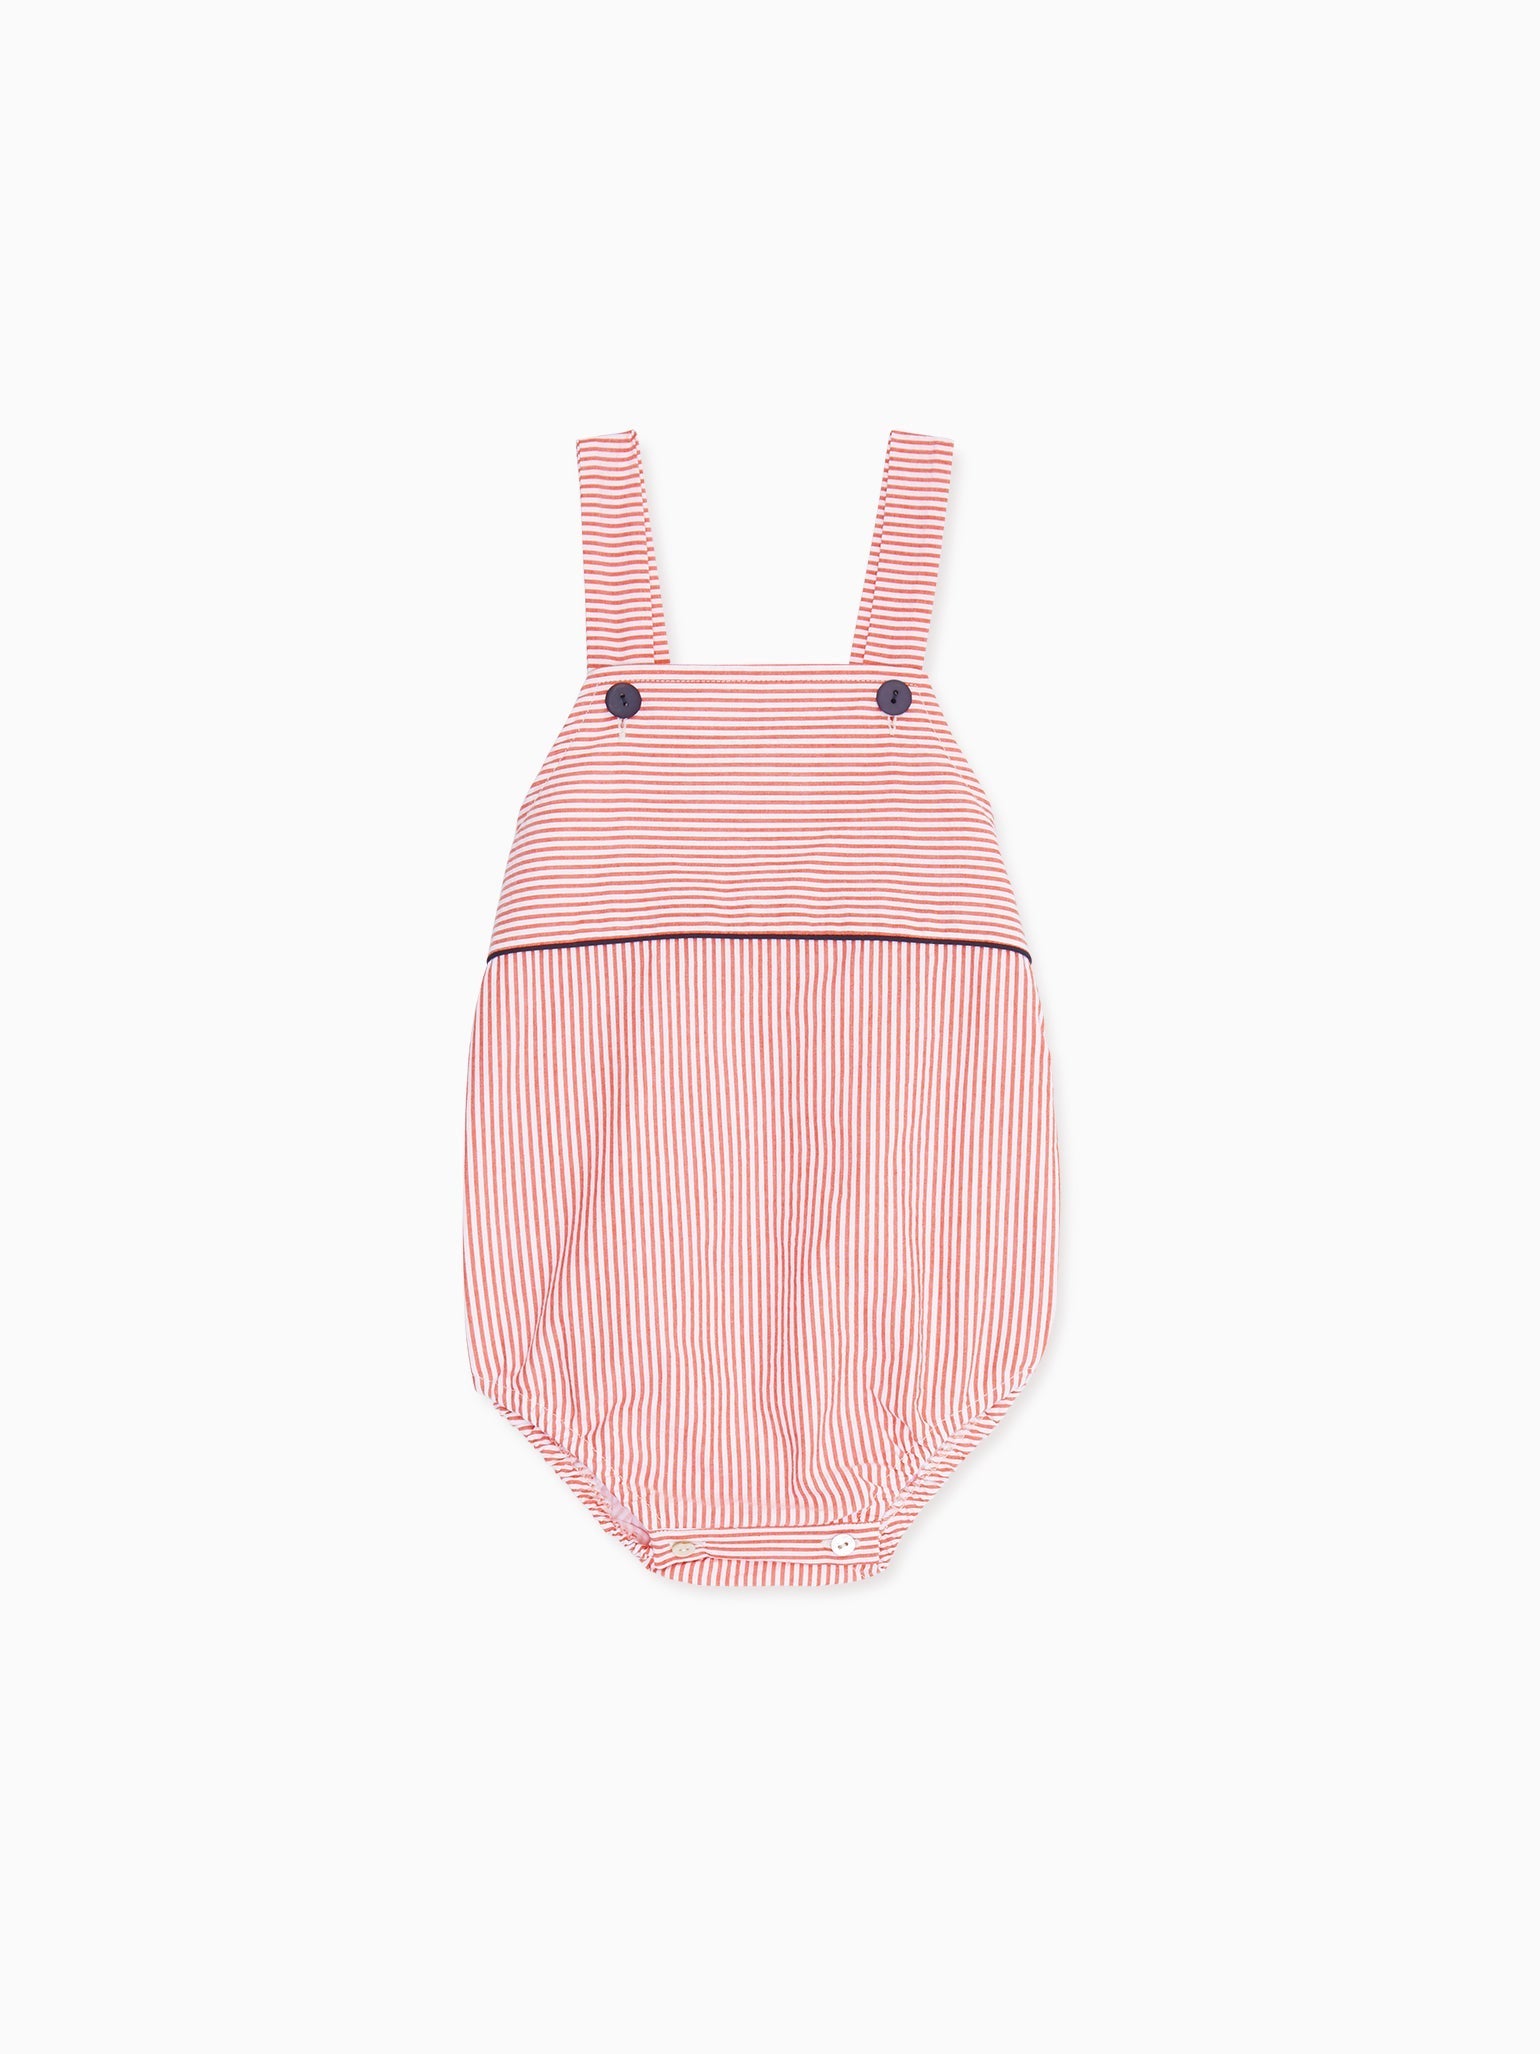 Blue Crispa Cotton Bunny Baby Knitted Overalls – La Coqueta Kids